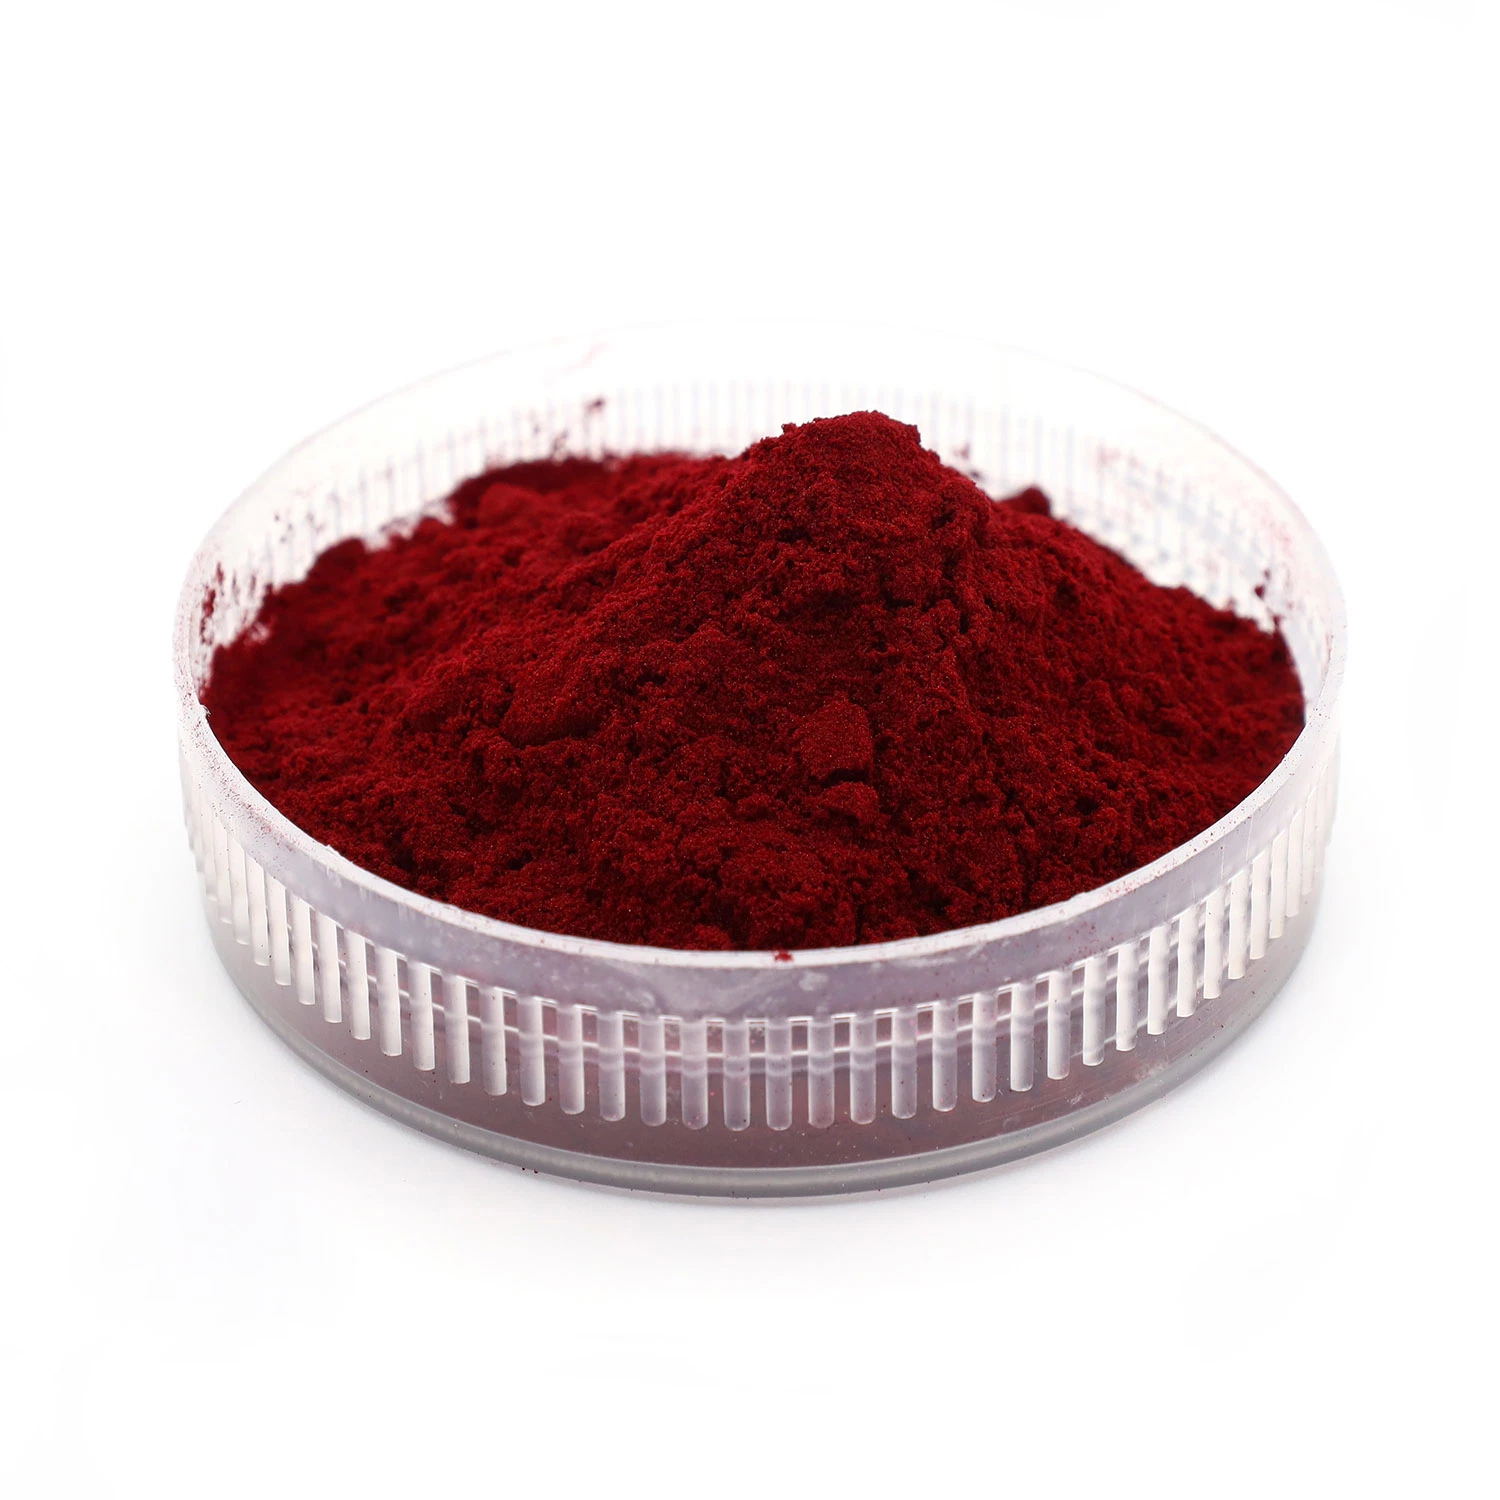 Um corante pigmento de cor vermelha de Sorgo